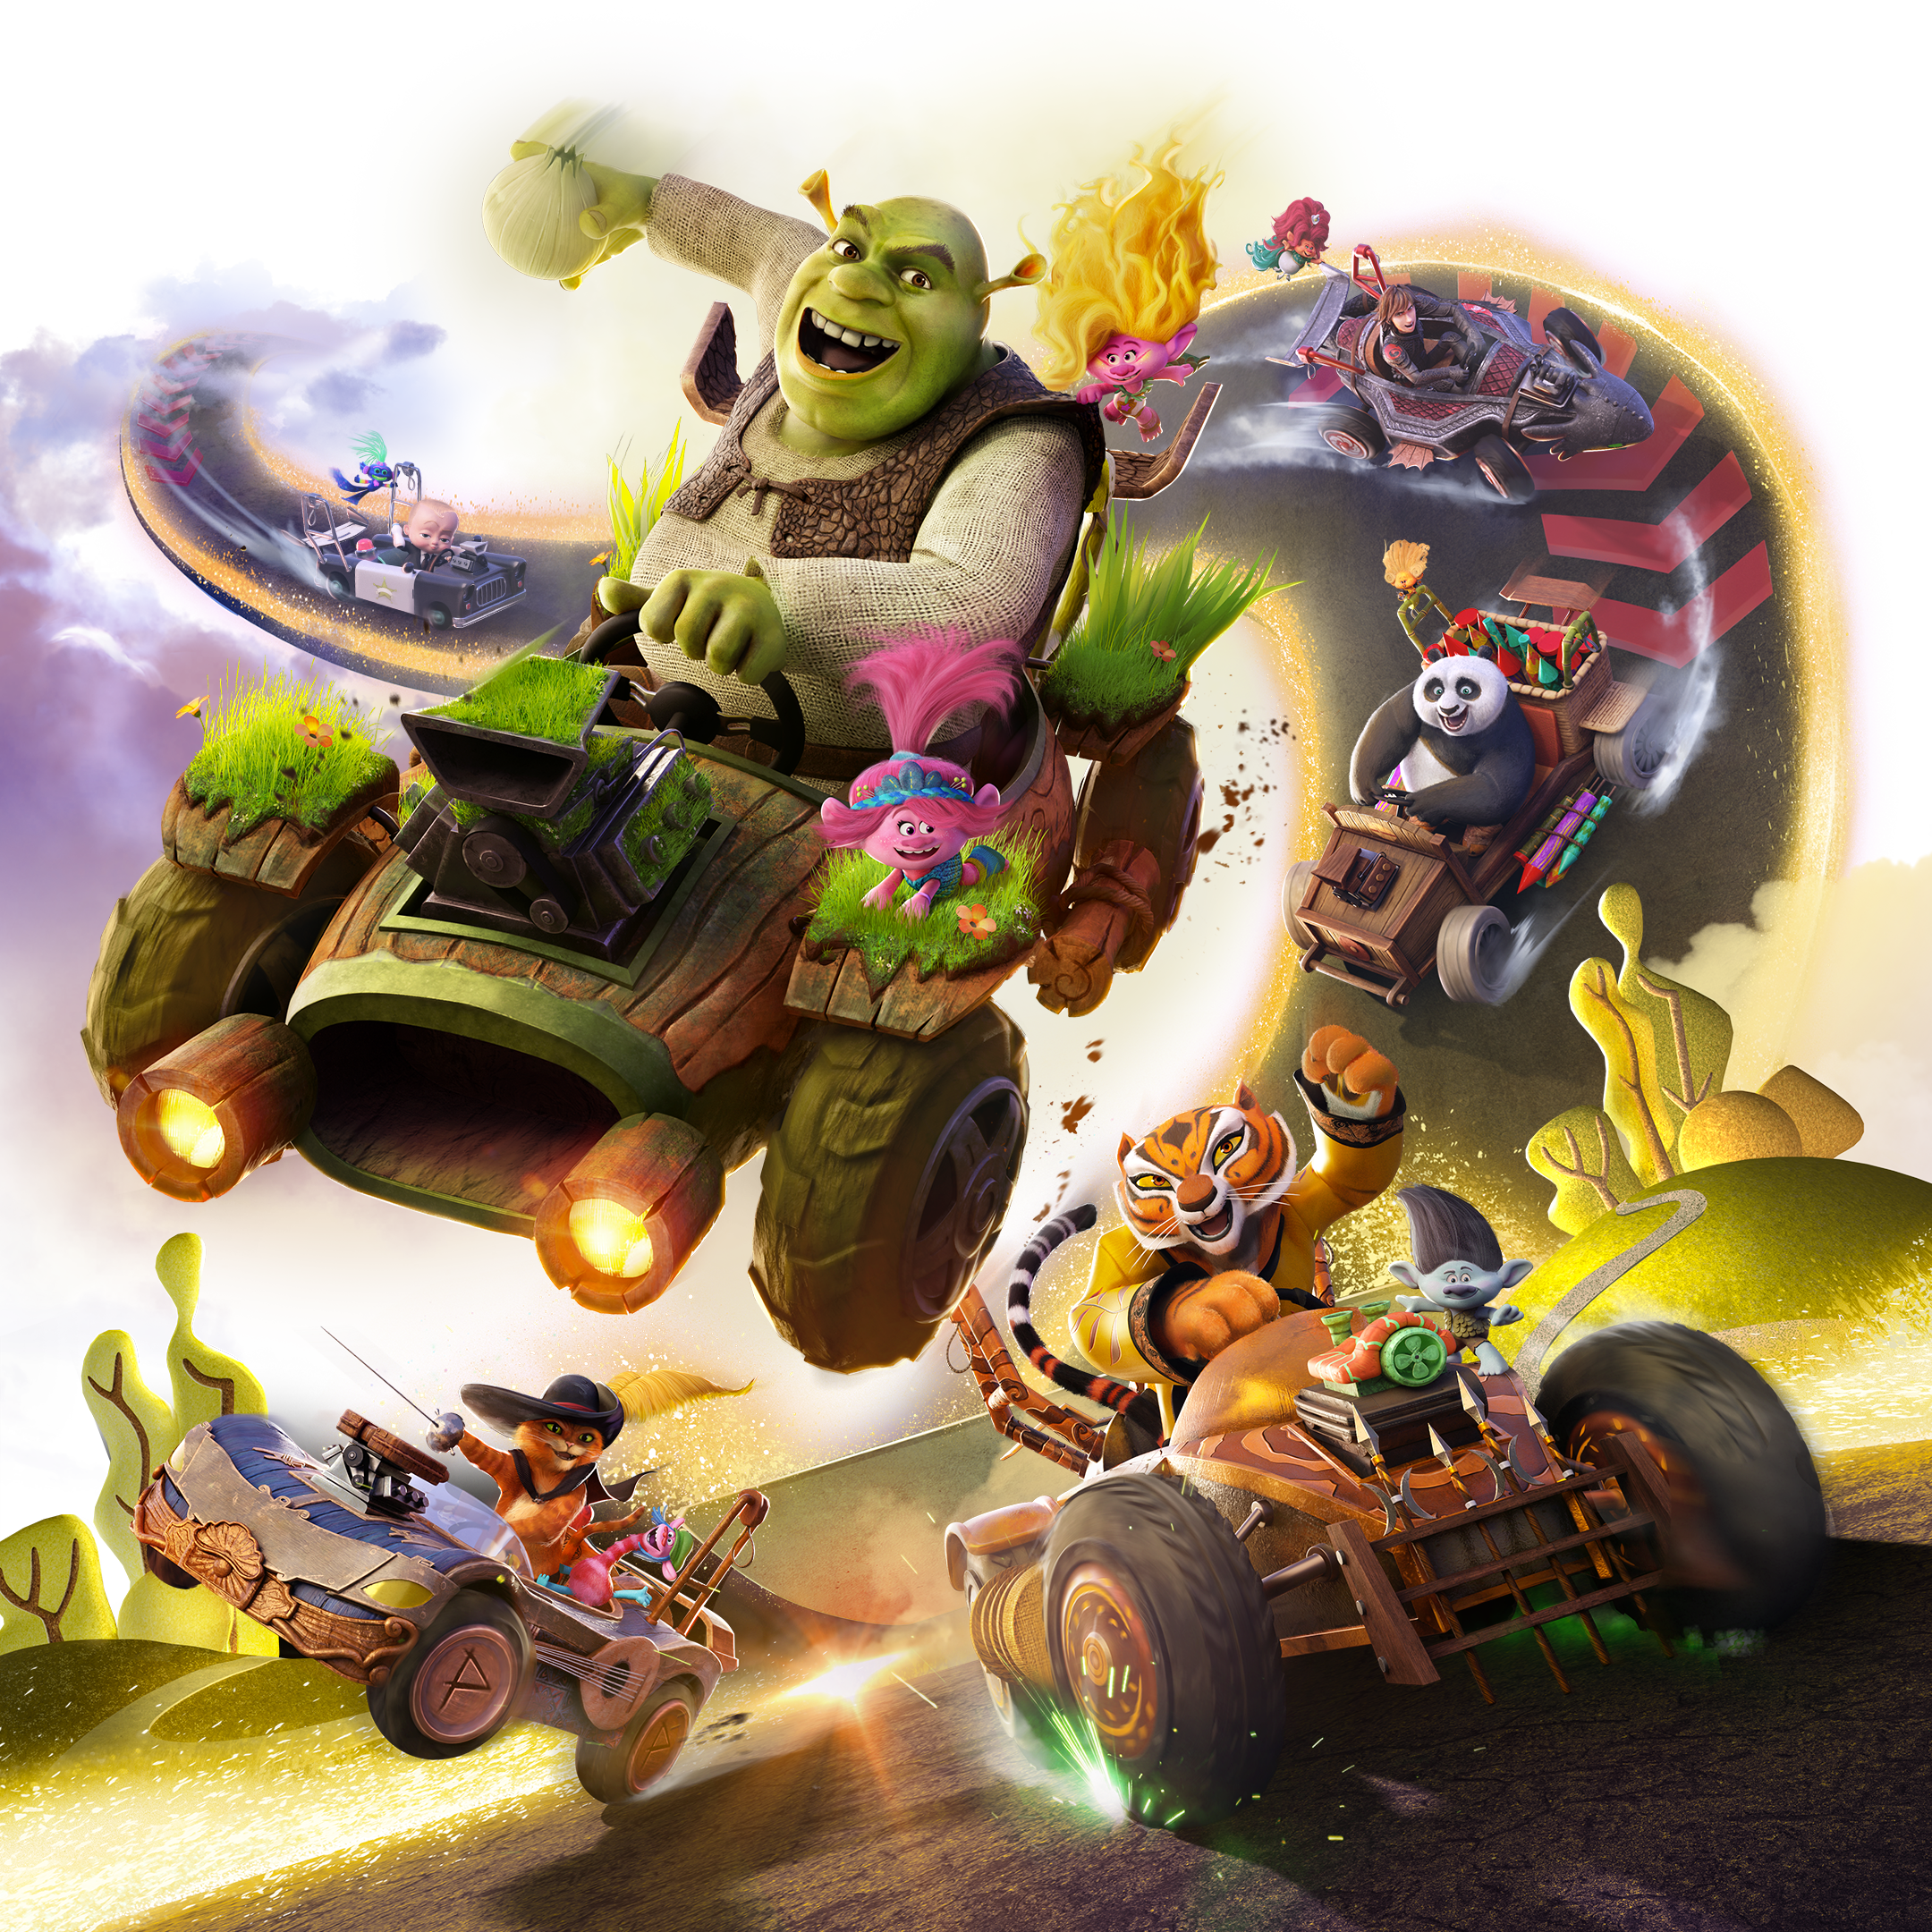 Jogo PS4 DreamWorks All-Star Kart Racing – MediaMarkt